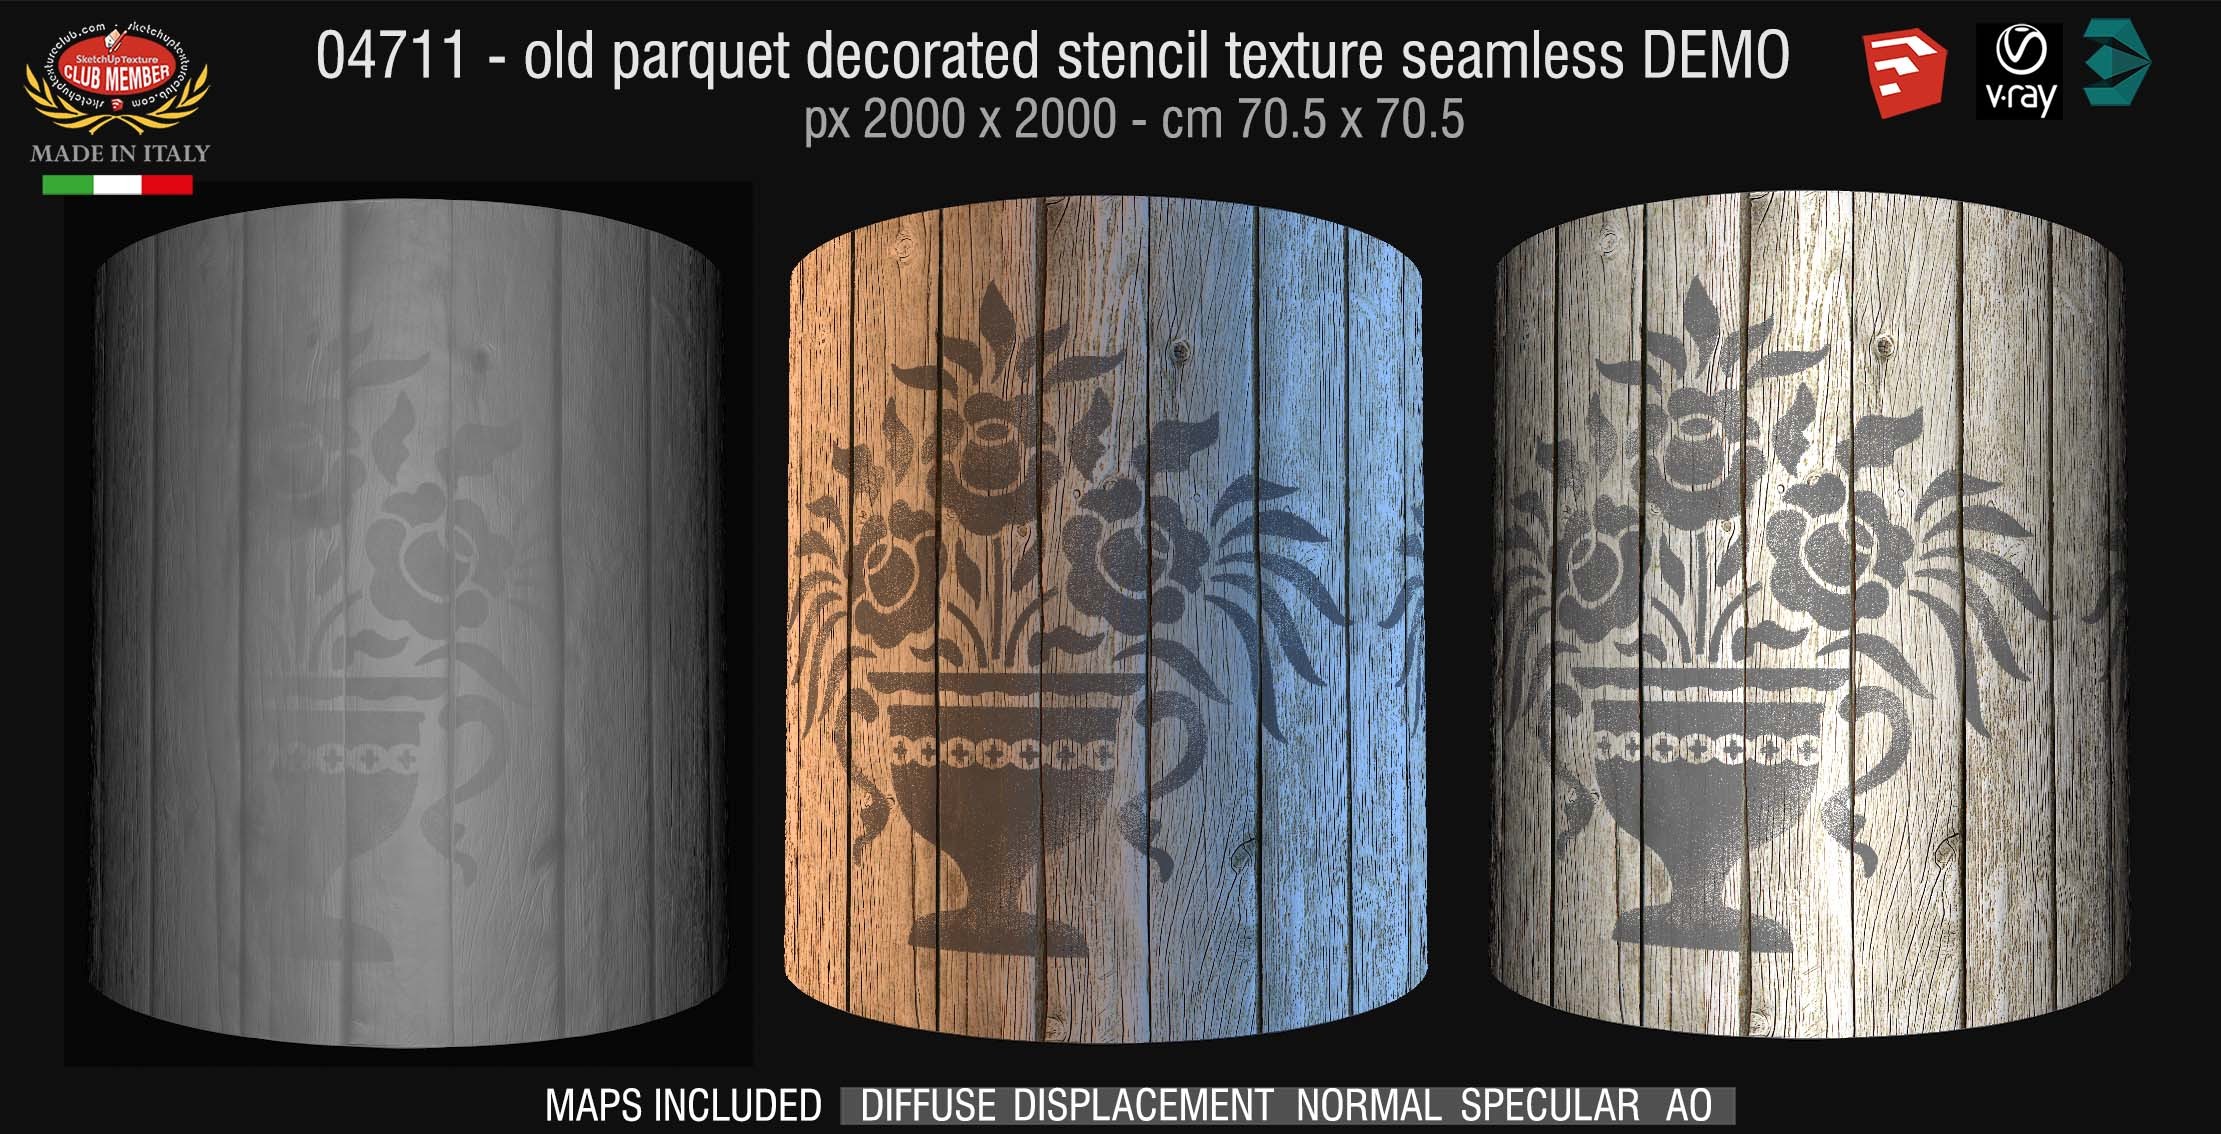 04711 HR Parquet decorated stencil texture seamless + maps DEMO